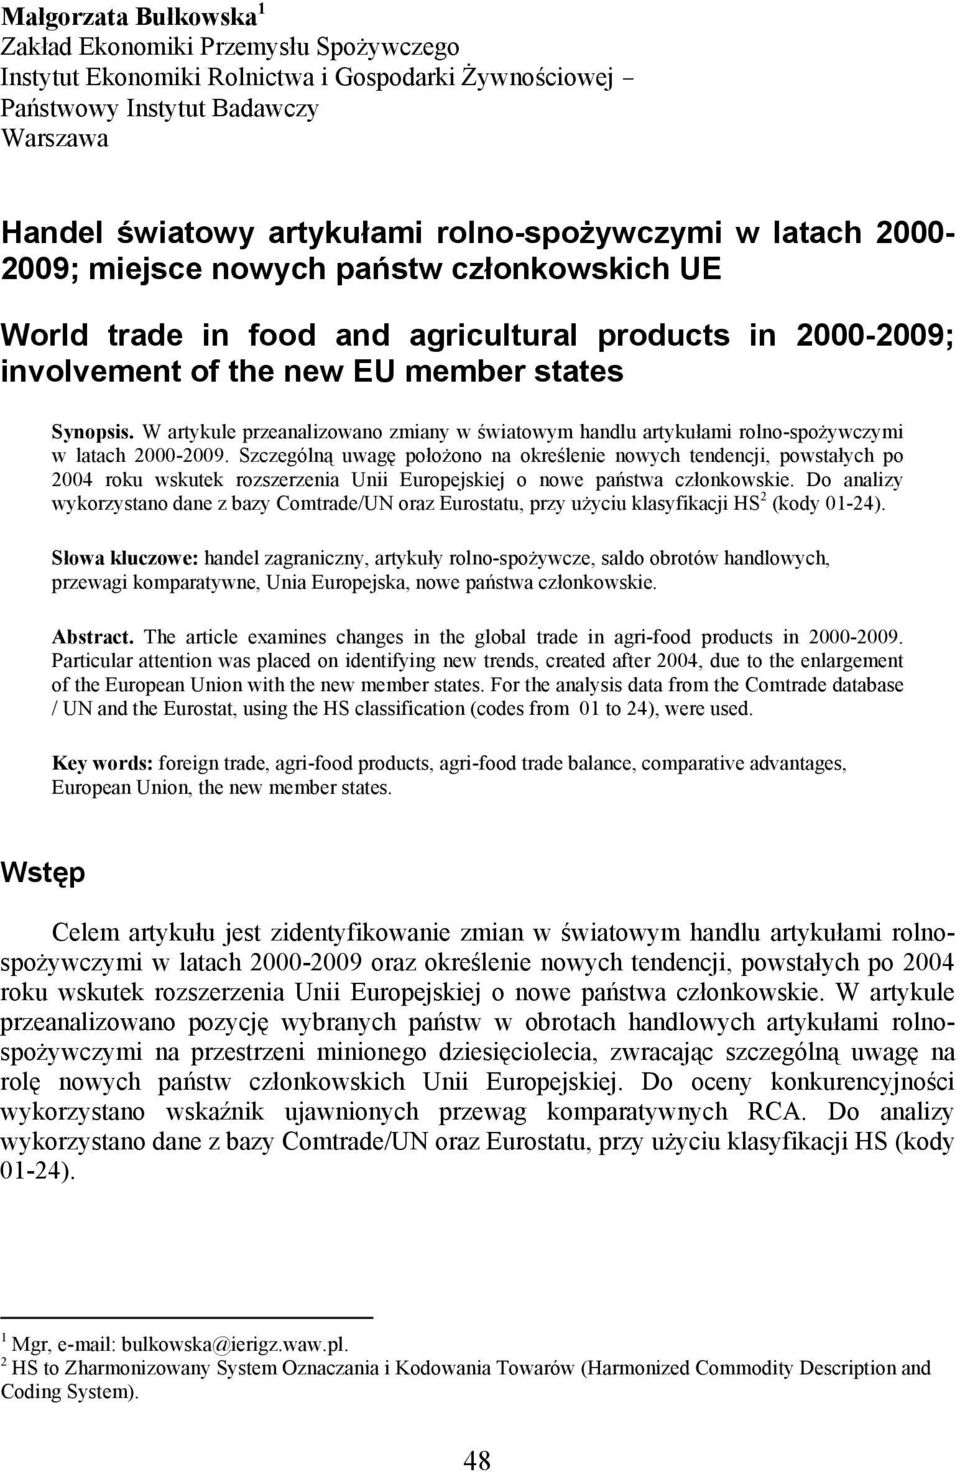 W artykule przeanalizowano zmiany w światowym handlu artykułami rolno-spożywczymi w latach 2000-2009.